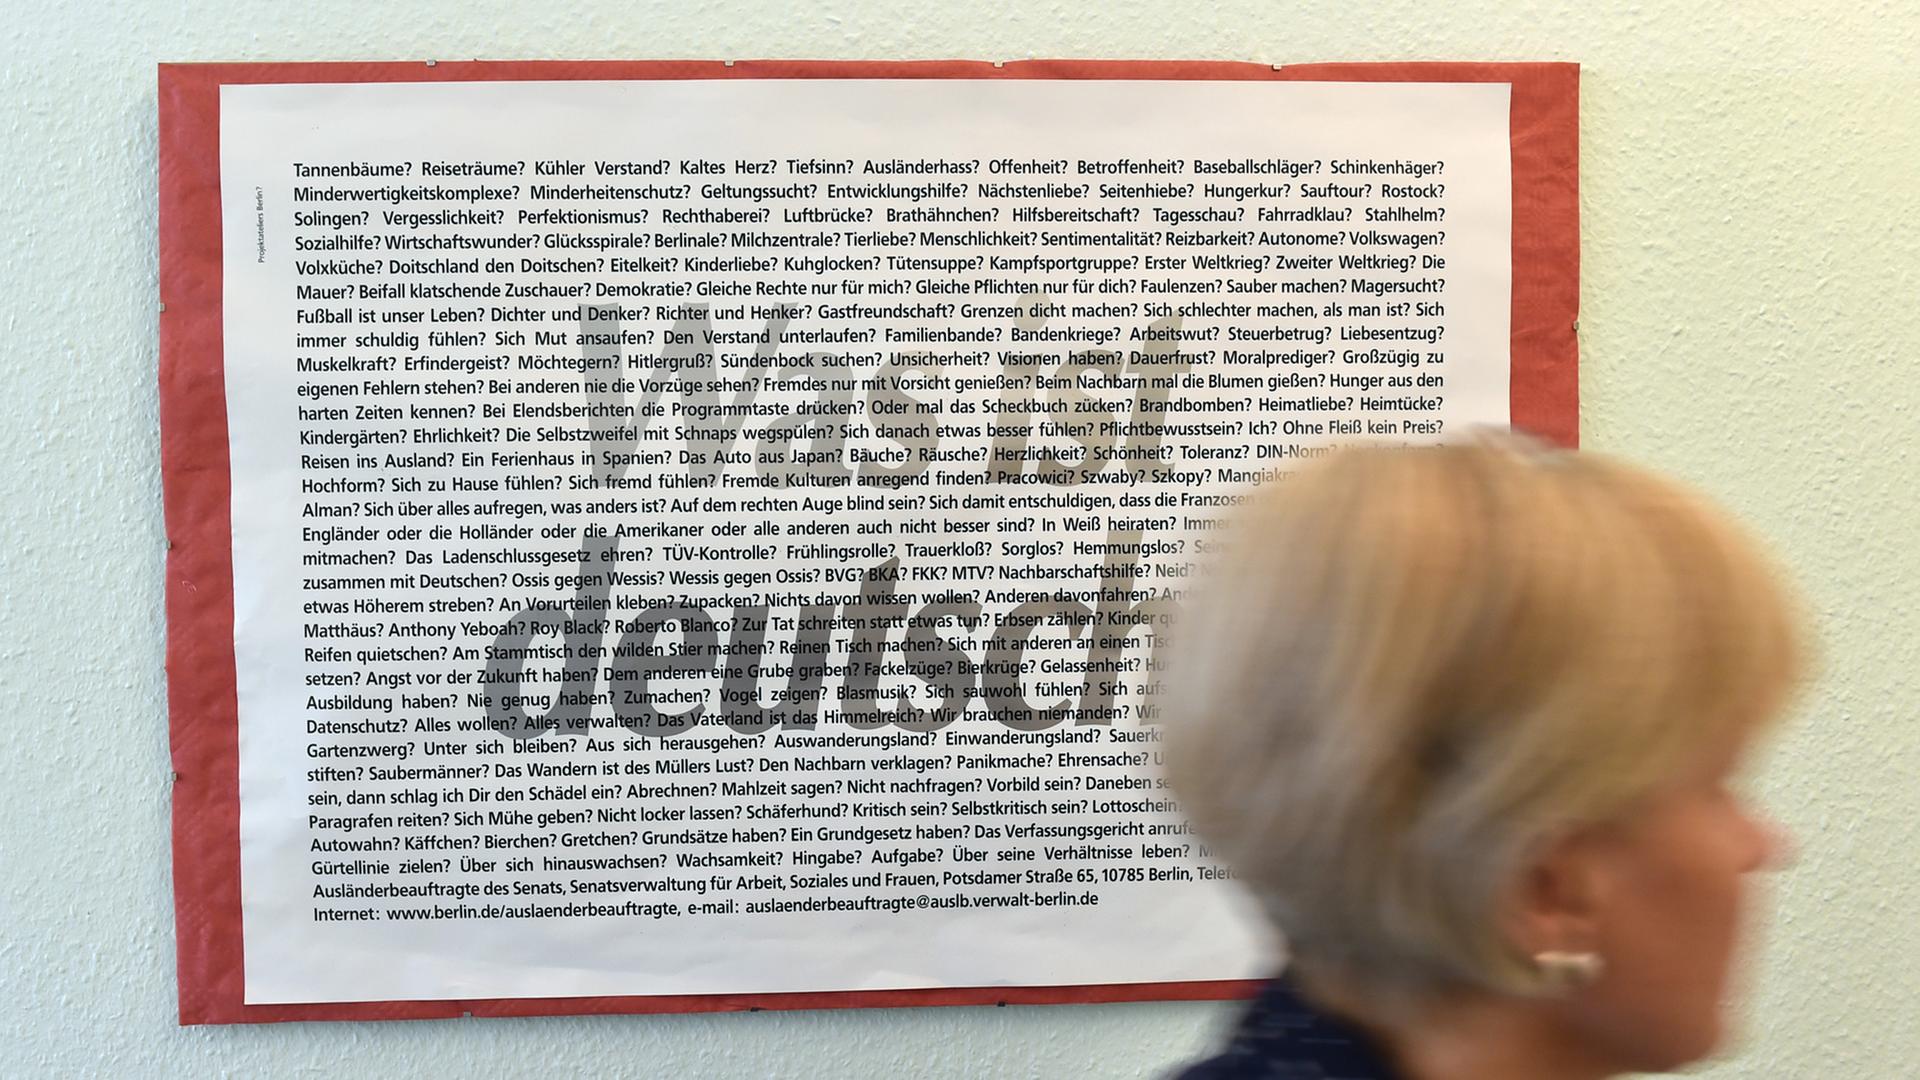 "Was ist deutsch?" steht auf einem Plakat in Berlin im AWO Begegnungszentrum in der Adalbertstraße.